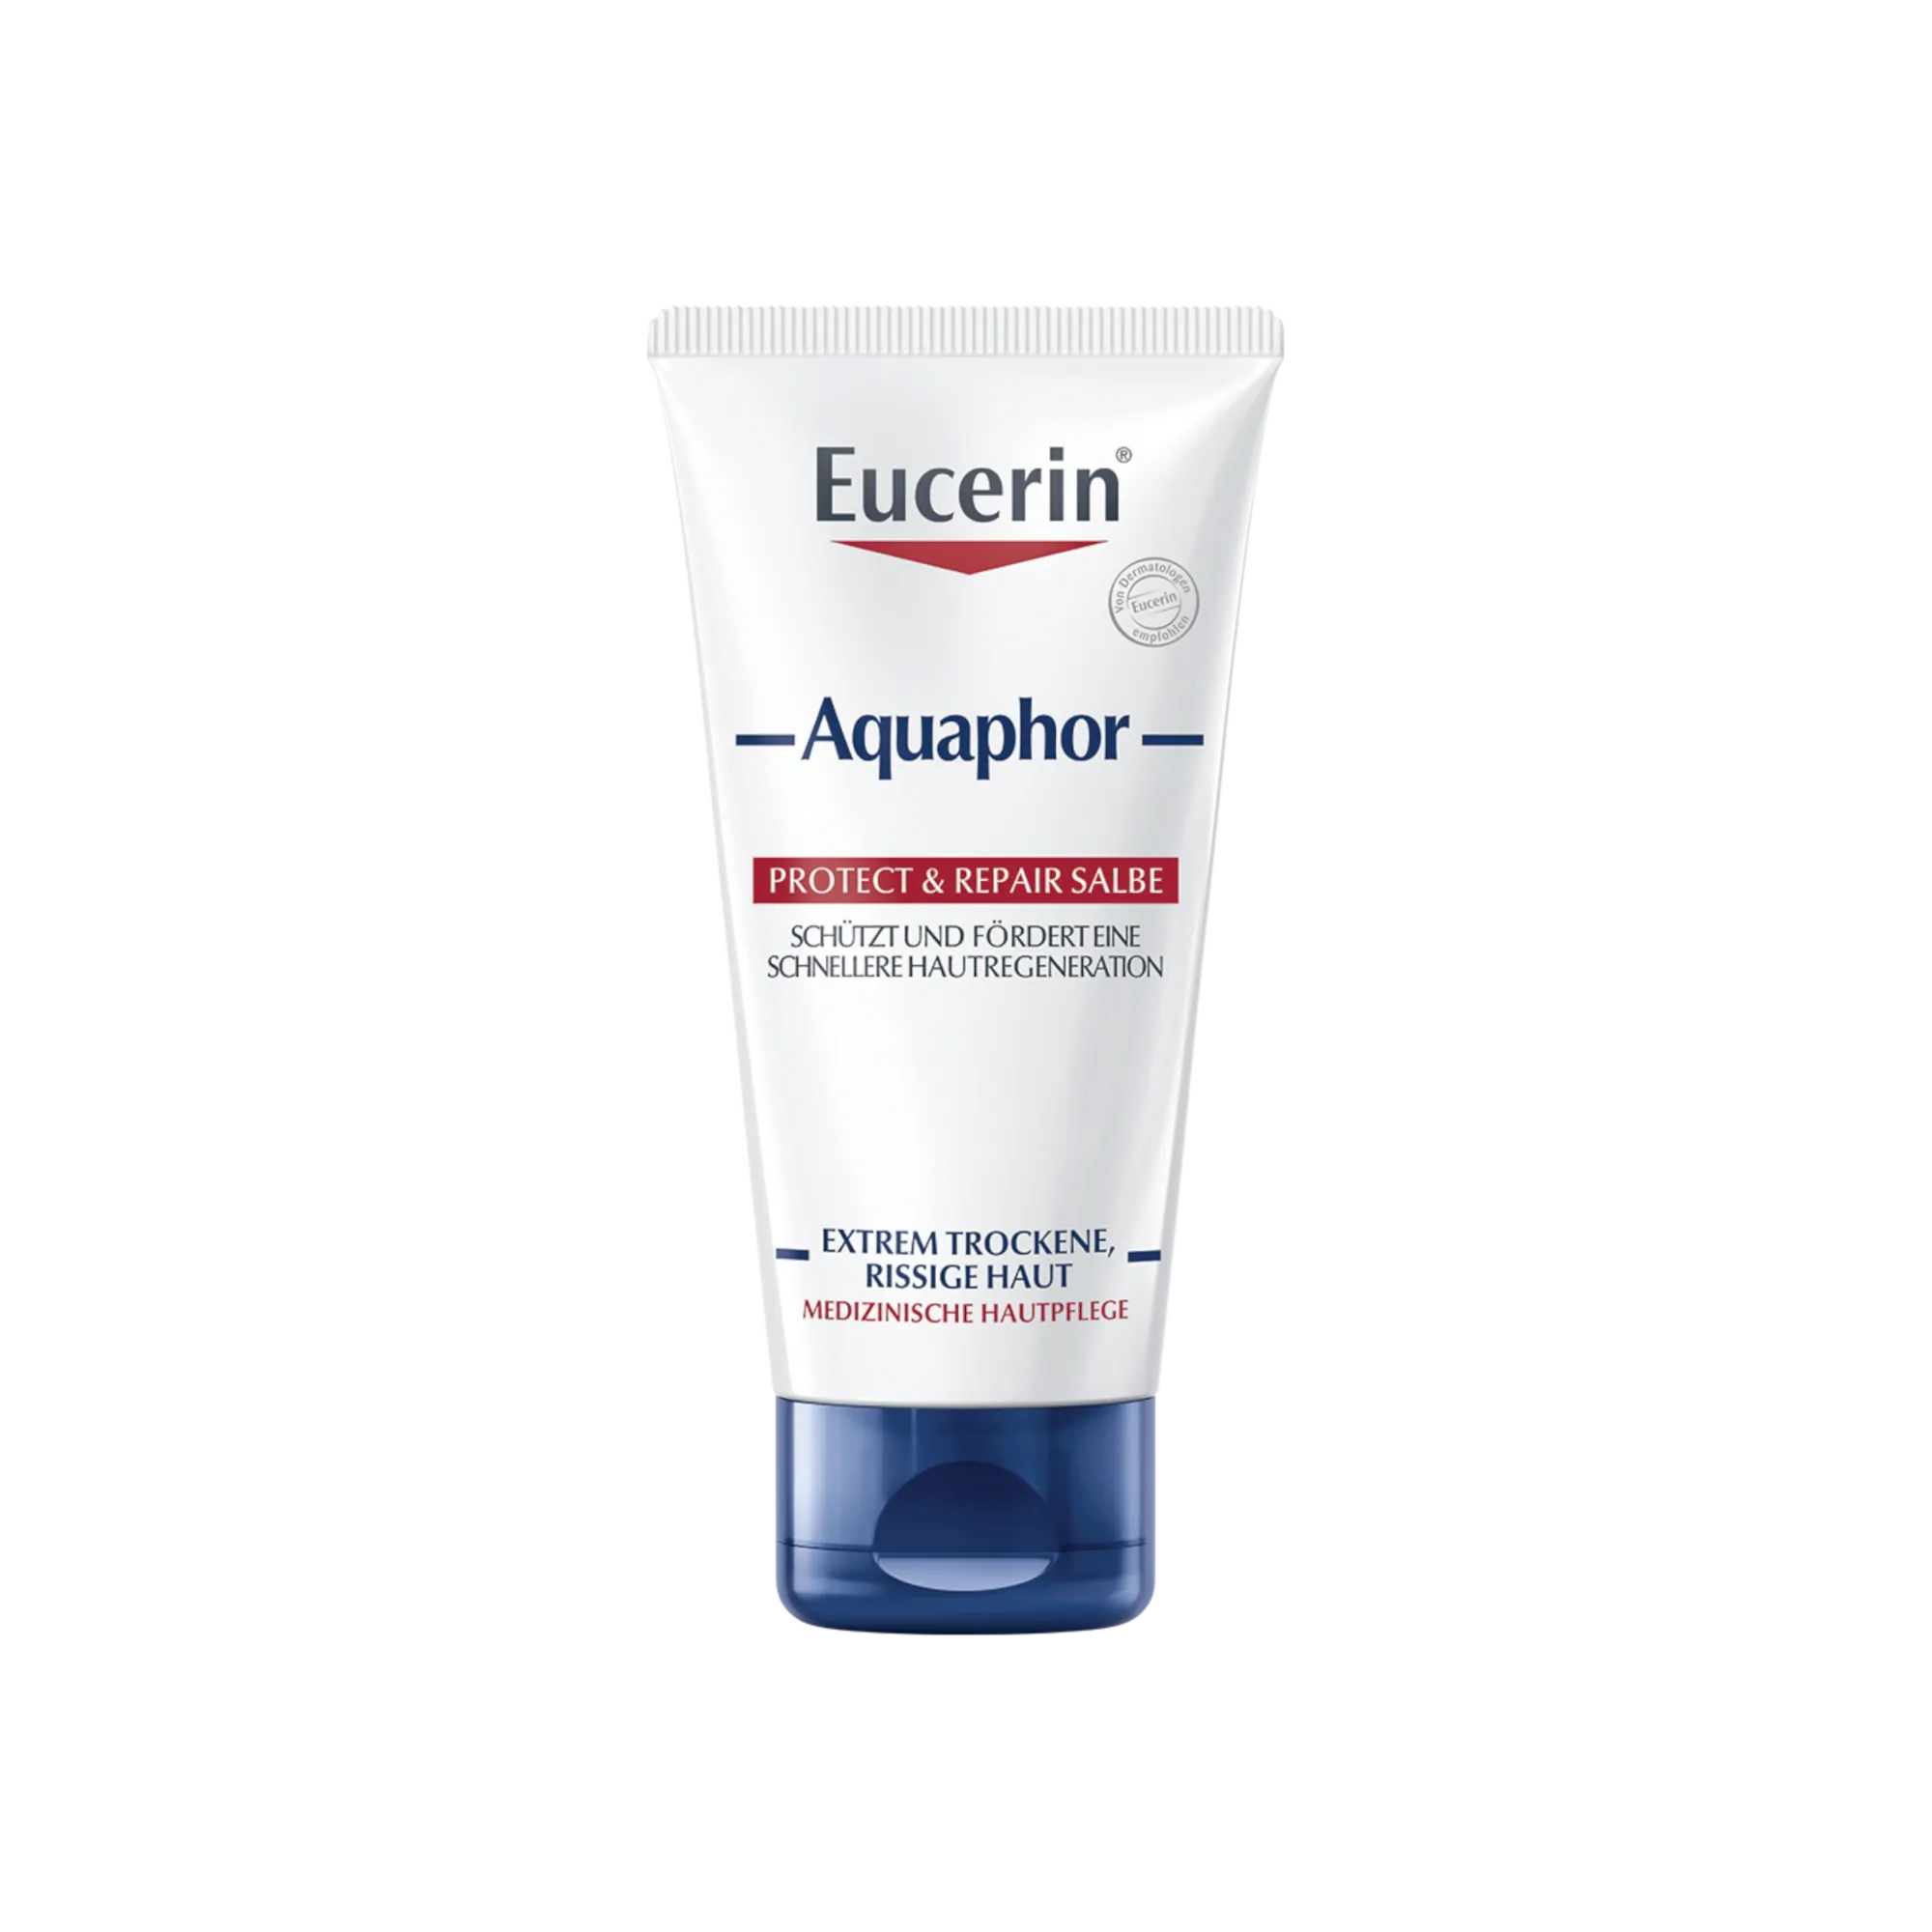 Eucerin Aquaphor maść regenerująca, 45 ml